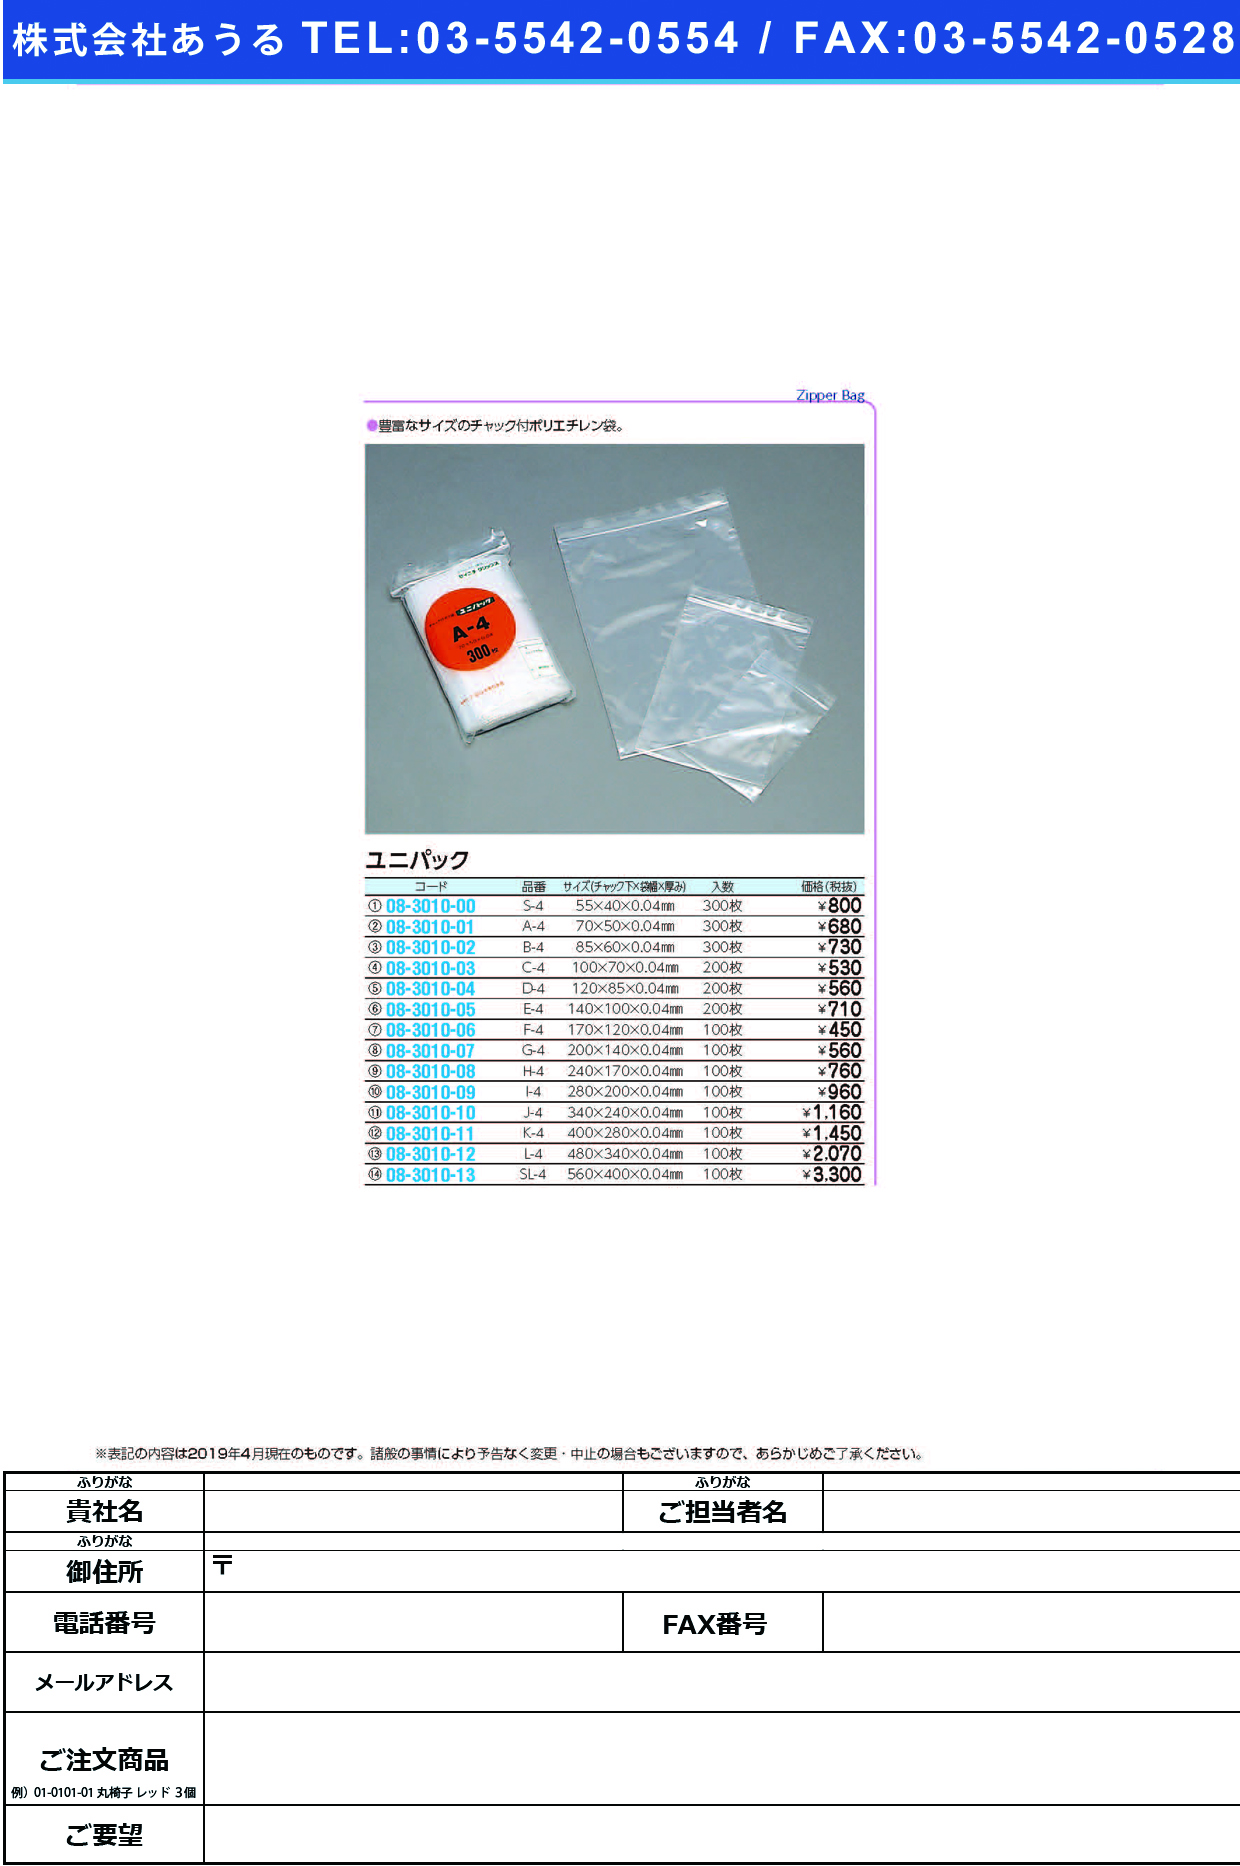 (08-3010-13)ユニパック SL-4(560X400MM)100ﾏｲ ﾕﾆﾊﾟｯｸ【1袋単位】【2019年カタログ商品】